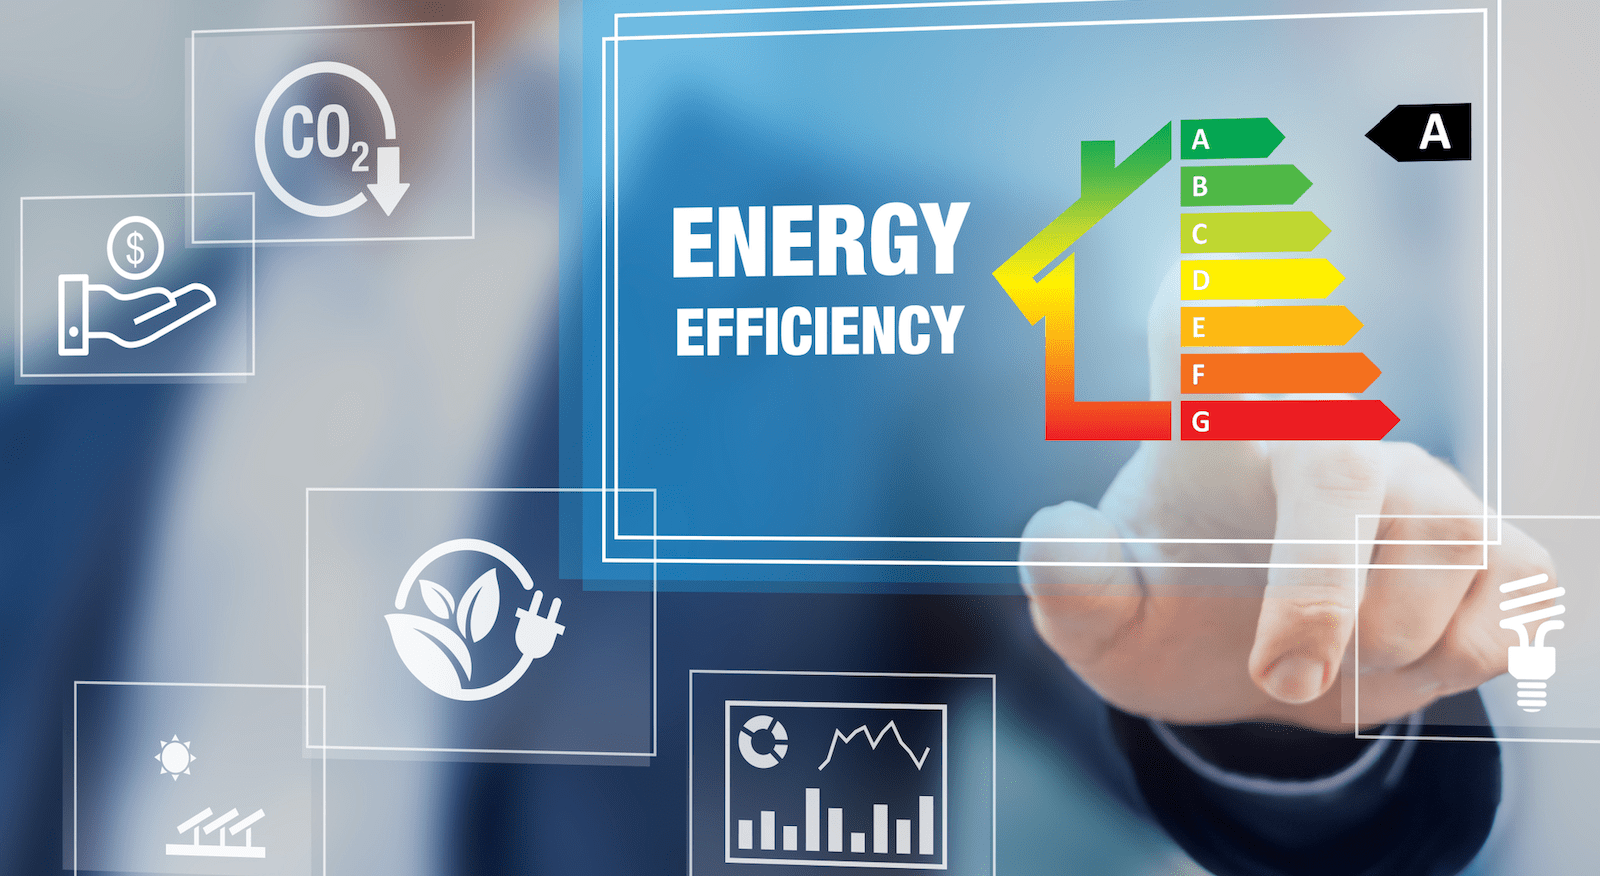 Increasing home energy efficiency